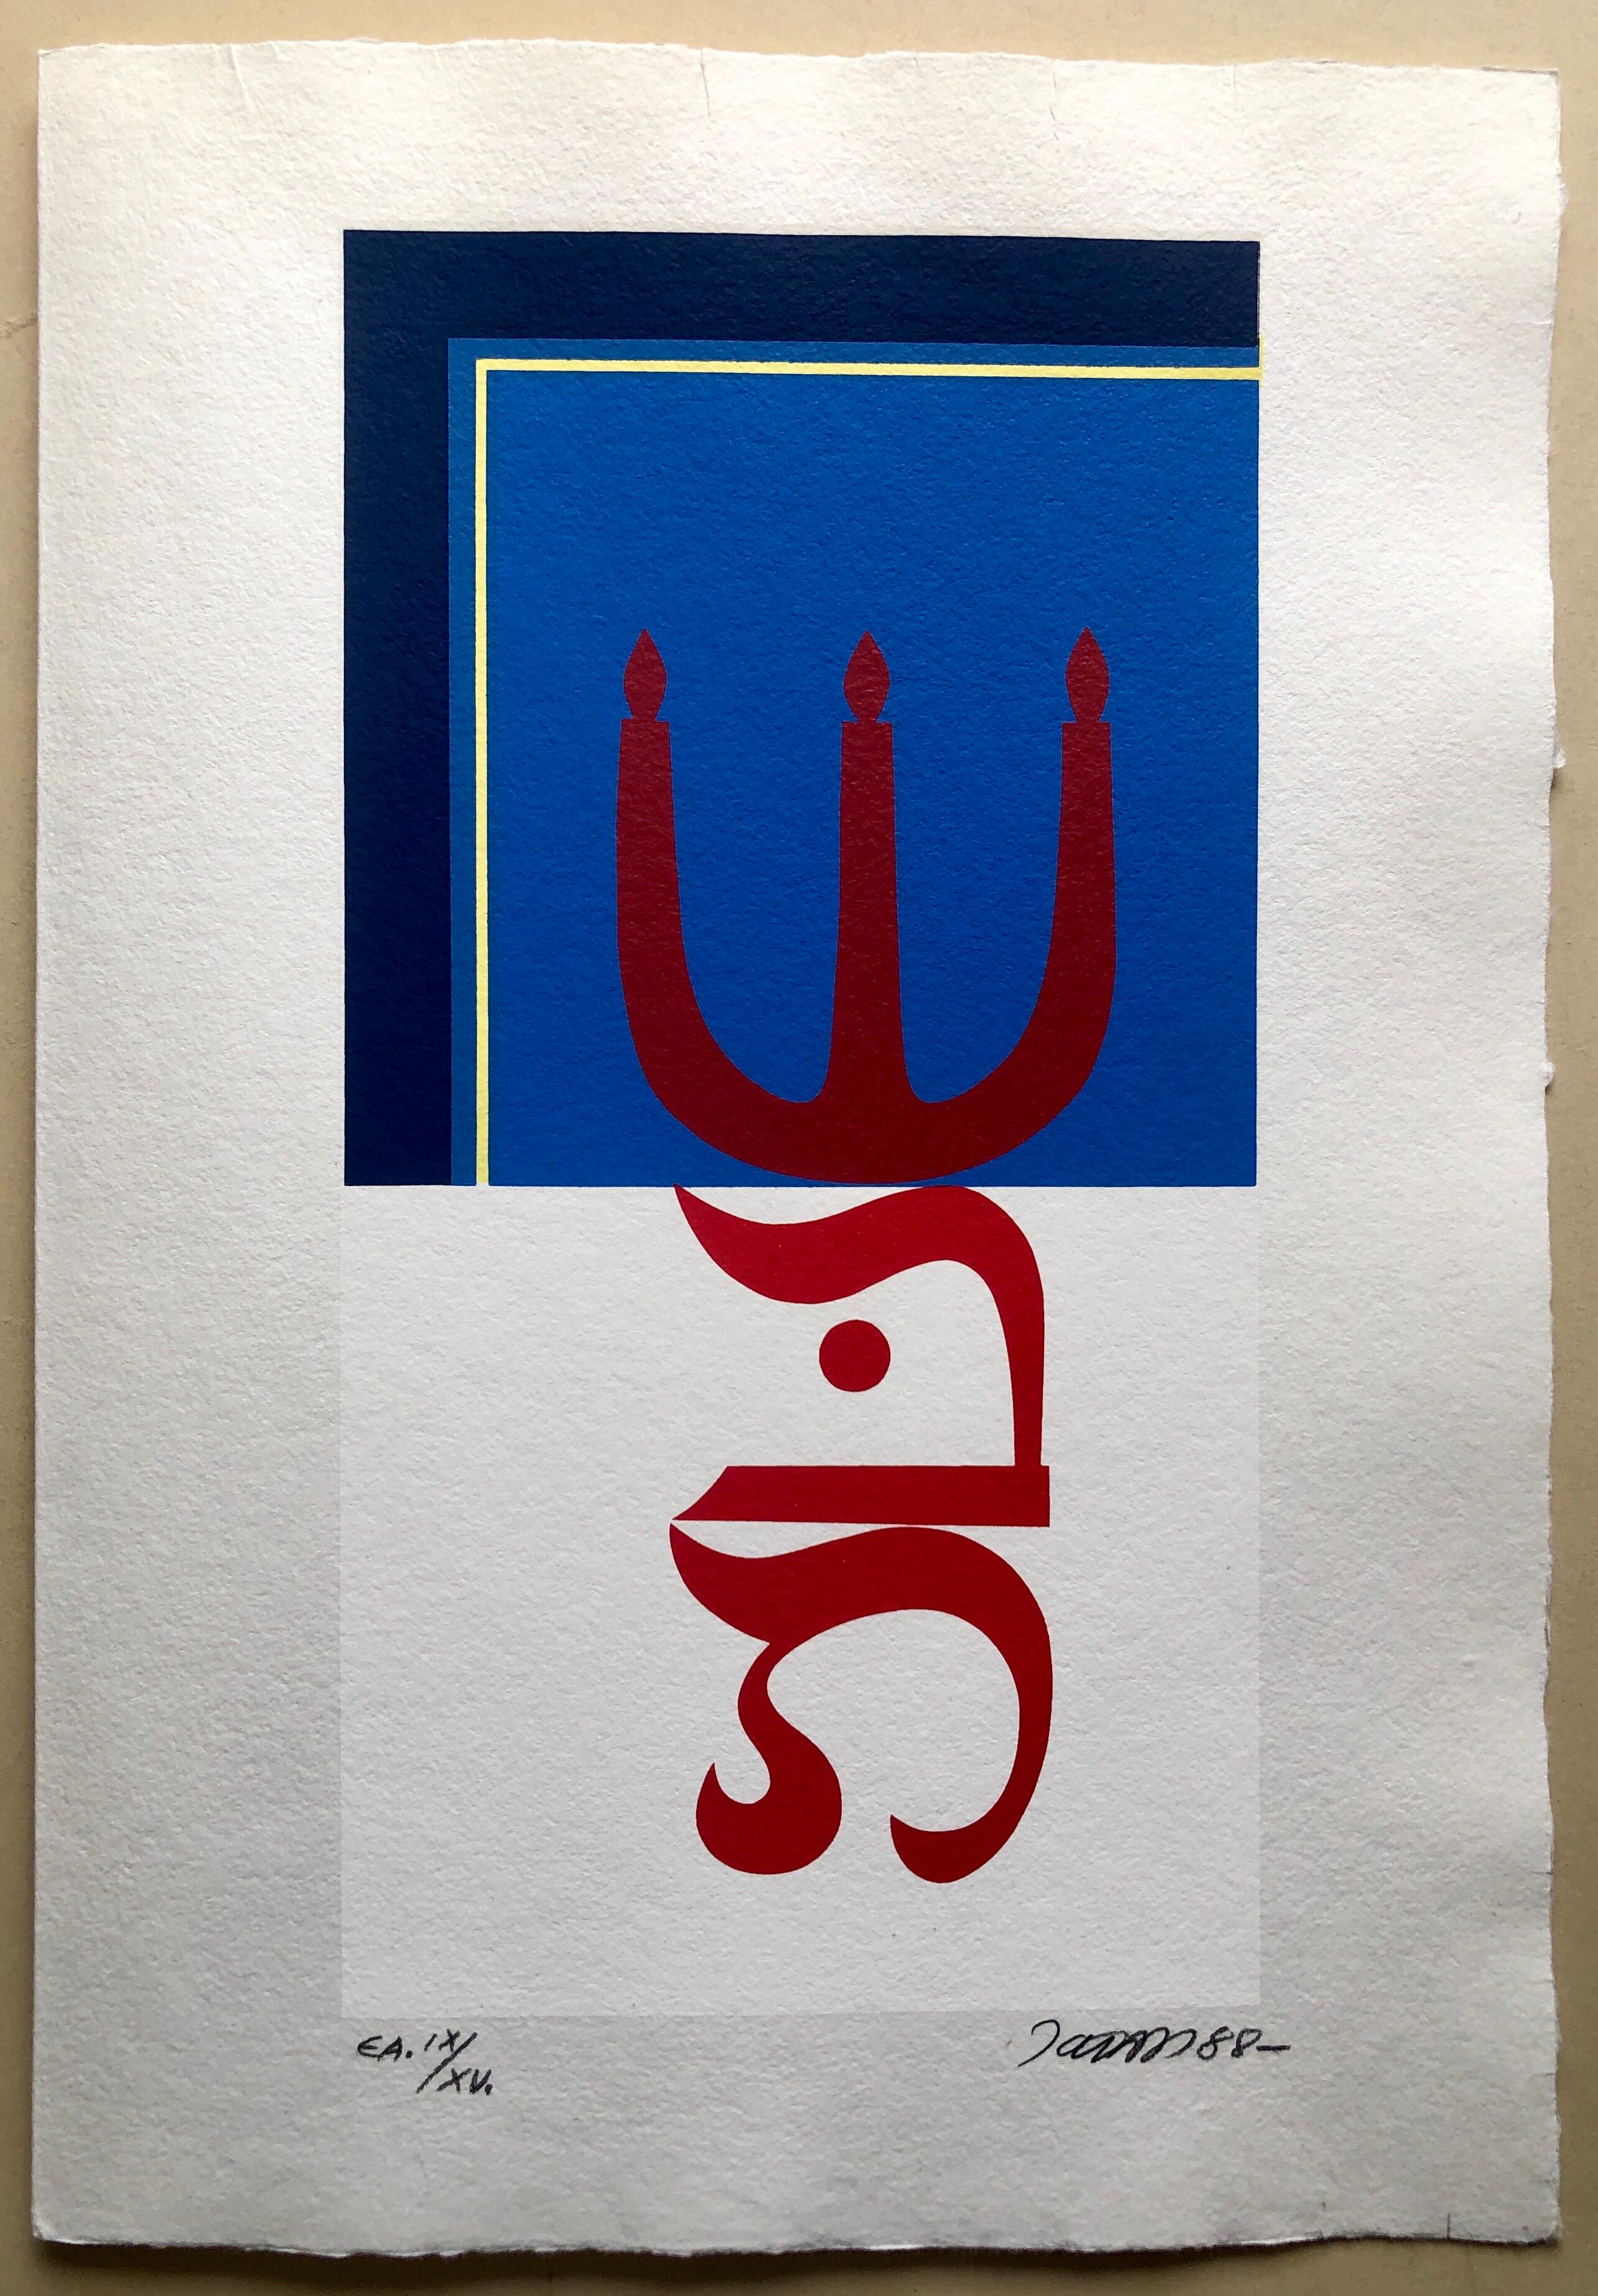 Imprimés hébreux abstraits sur du papier lourd fabriqué par moulage d'une petite édition de 15. Il y a une page de texte en hongrois en face, repliée. Impressions géométriques abstraites aux bords francs, en couleur, basées sur l'alphabet hébreu